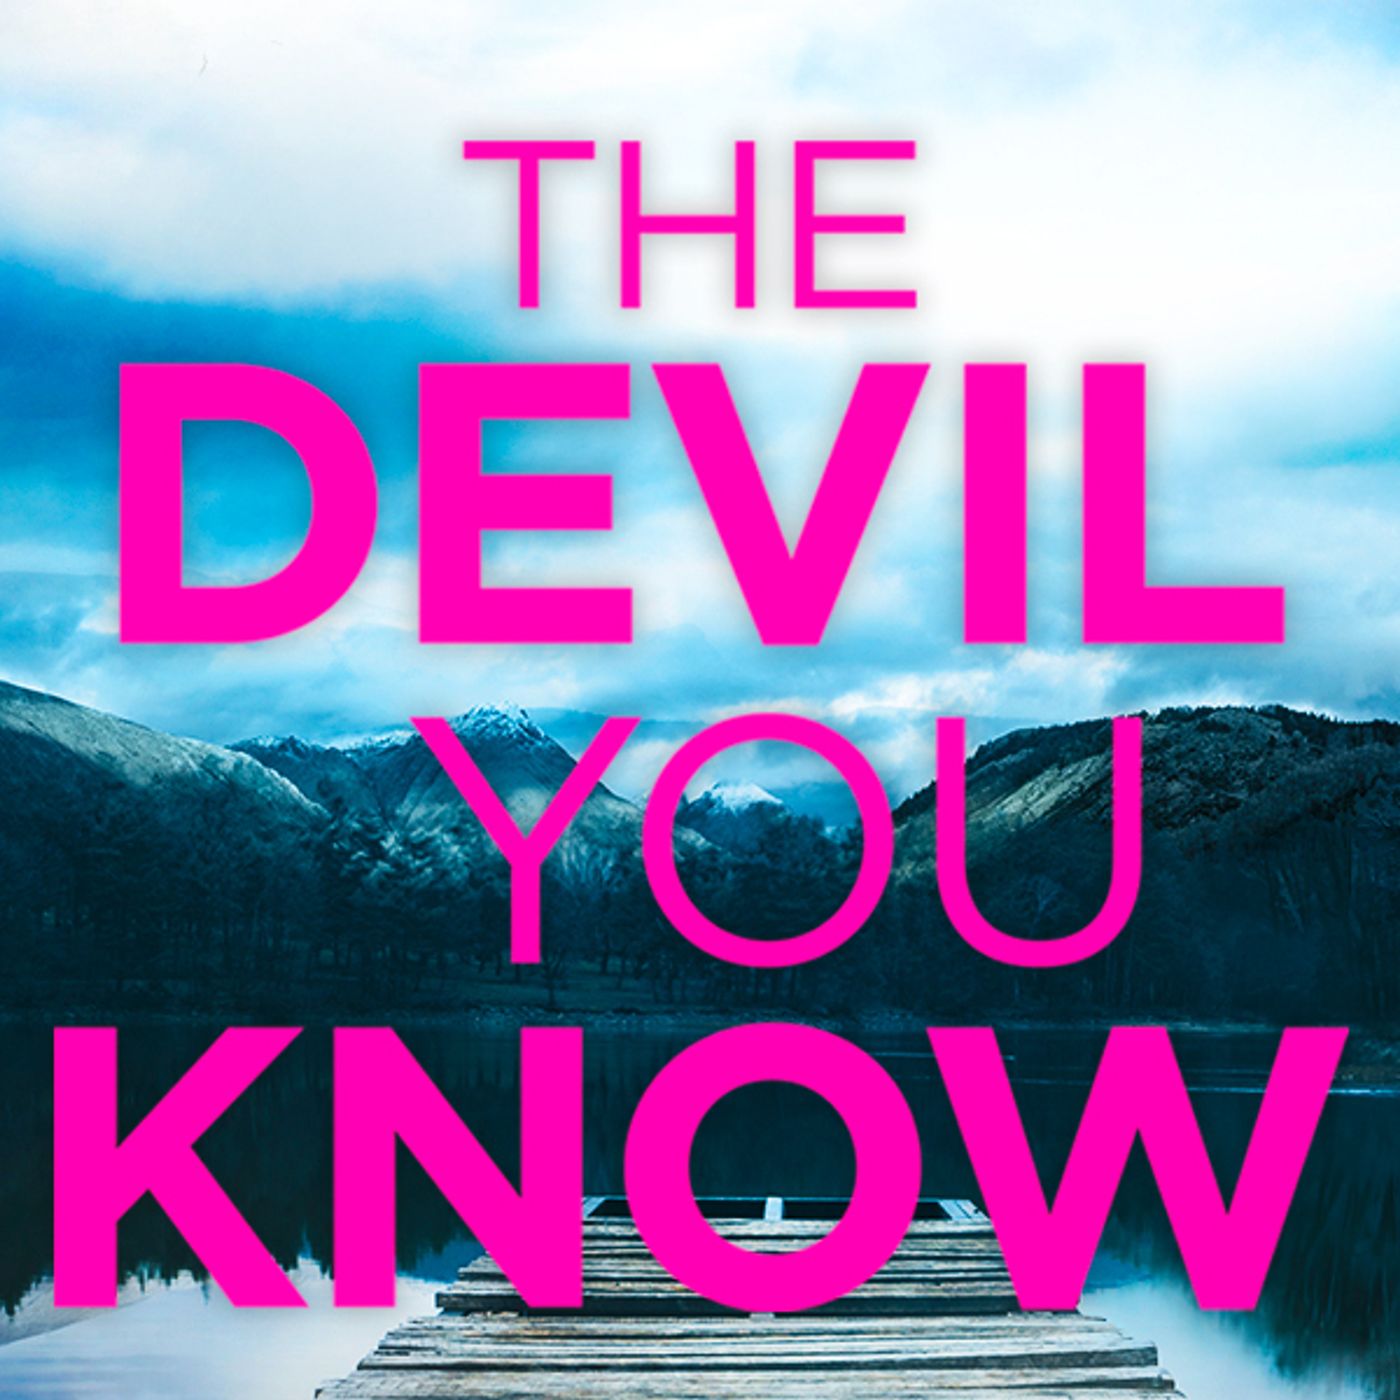 365: Neil Lancaster - The Devil You Know